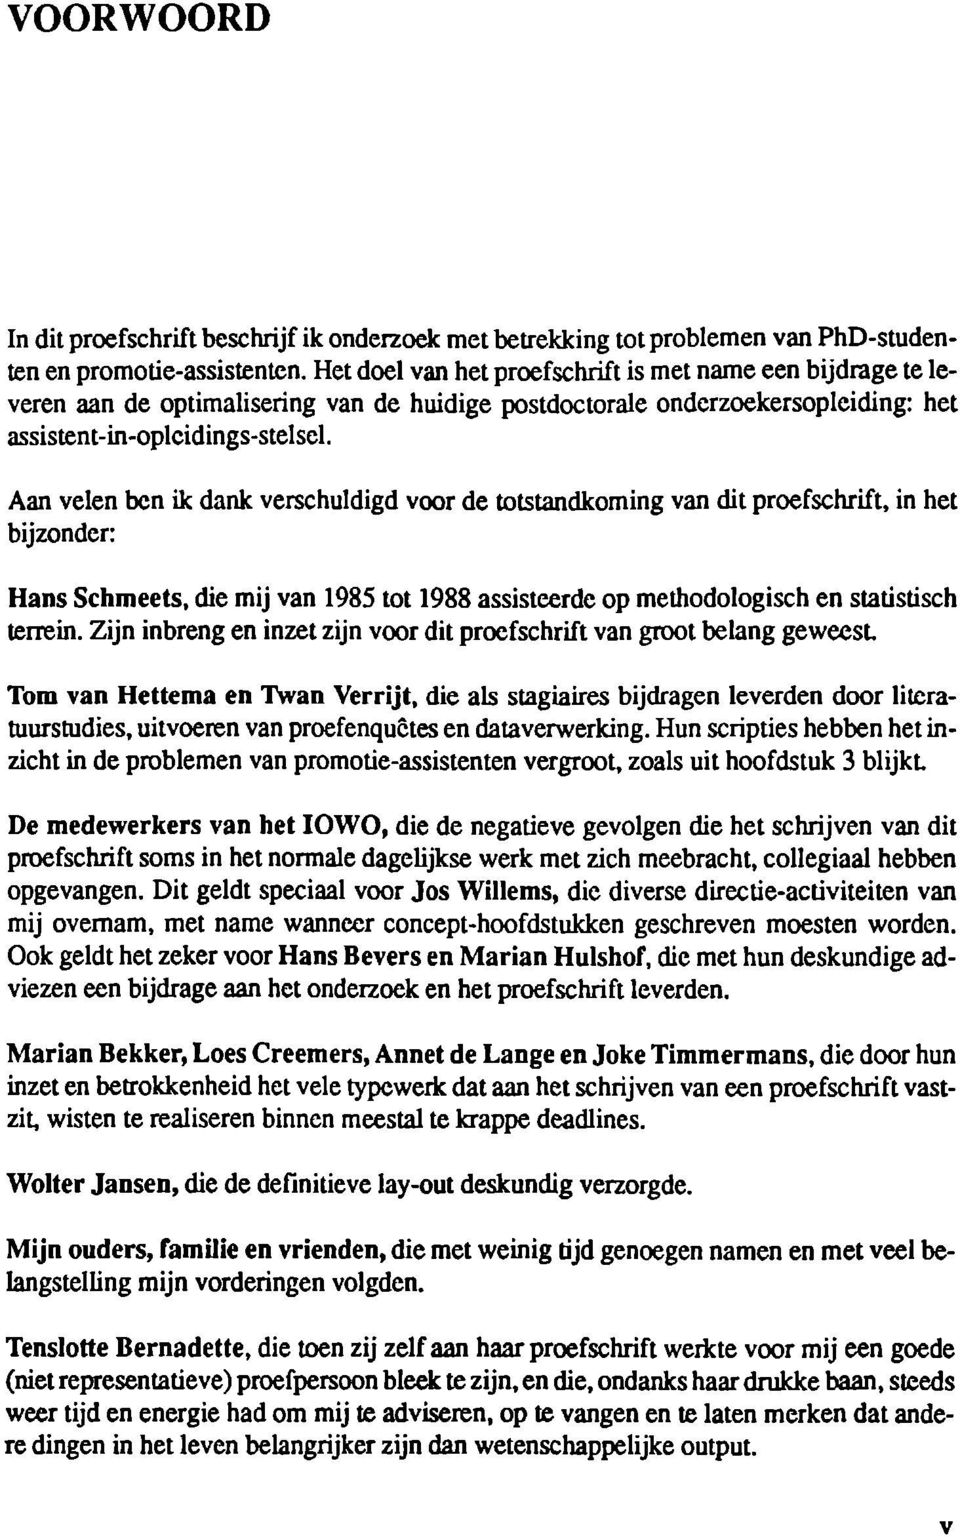 Aan velen ben ik dank verschuldigd voor de totstandkoming van dit proefschrift, in het bijzonder: Hans Schmeets, die mij van 1985 tot 1988 assisteerde op methodologisch en statistisch terrein.